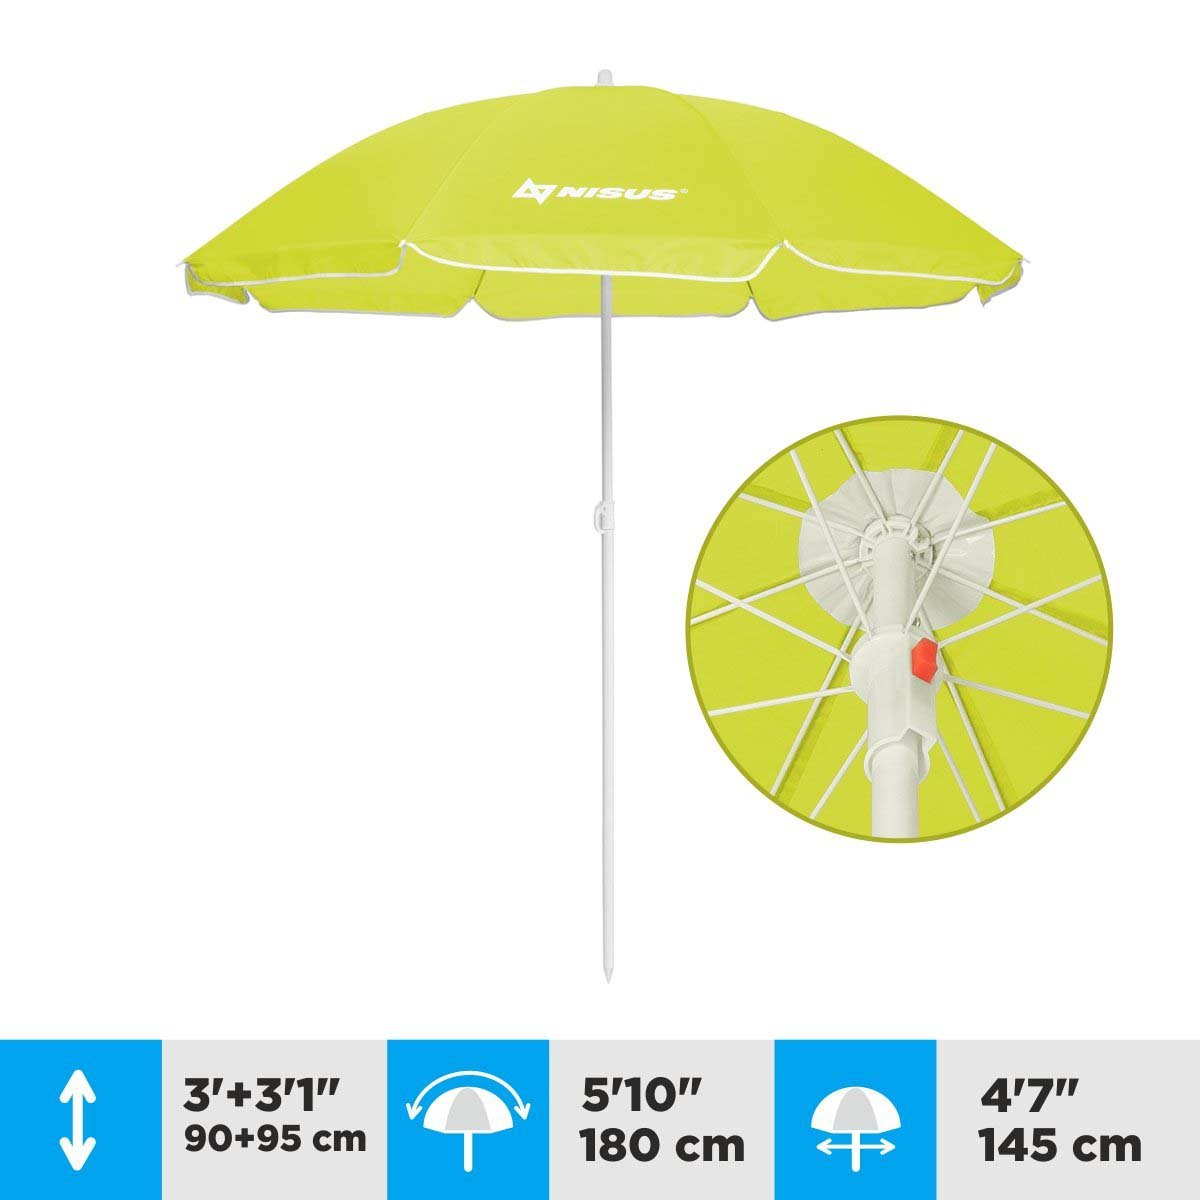 A 4.7 ft Lime Green Tilting Beach Umbrella is 6.1 feet high